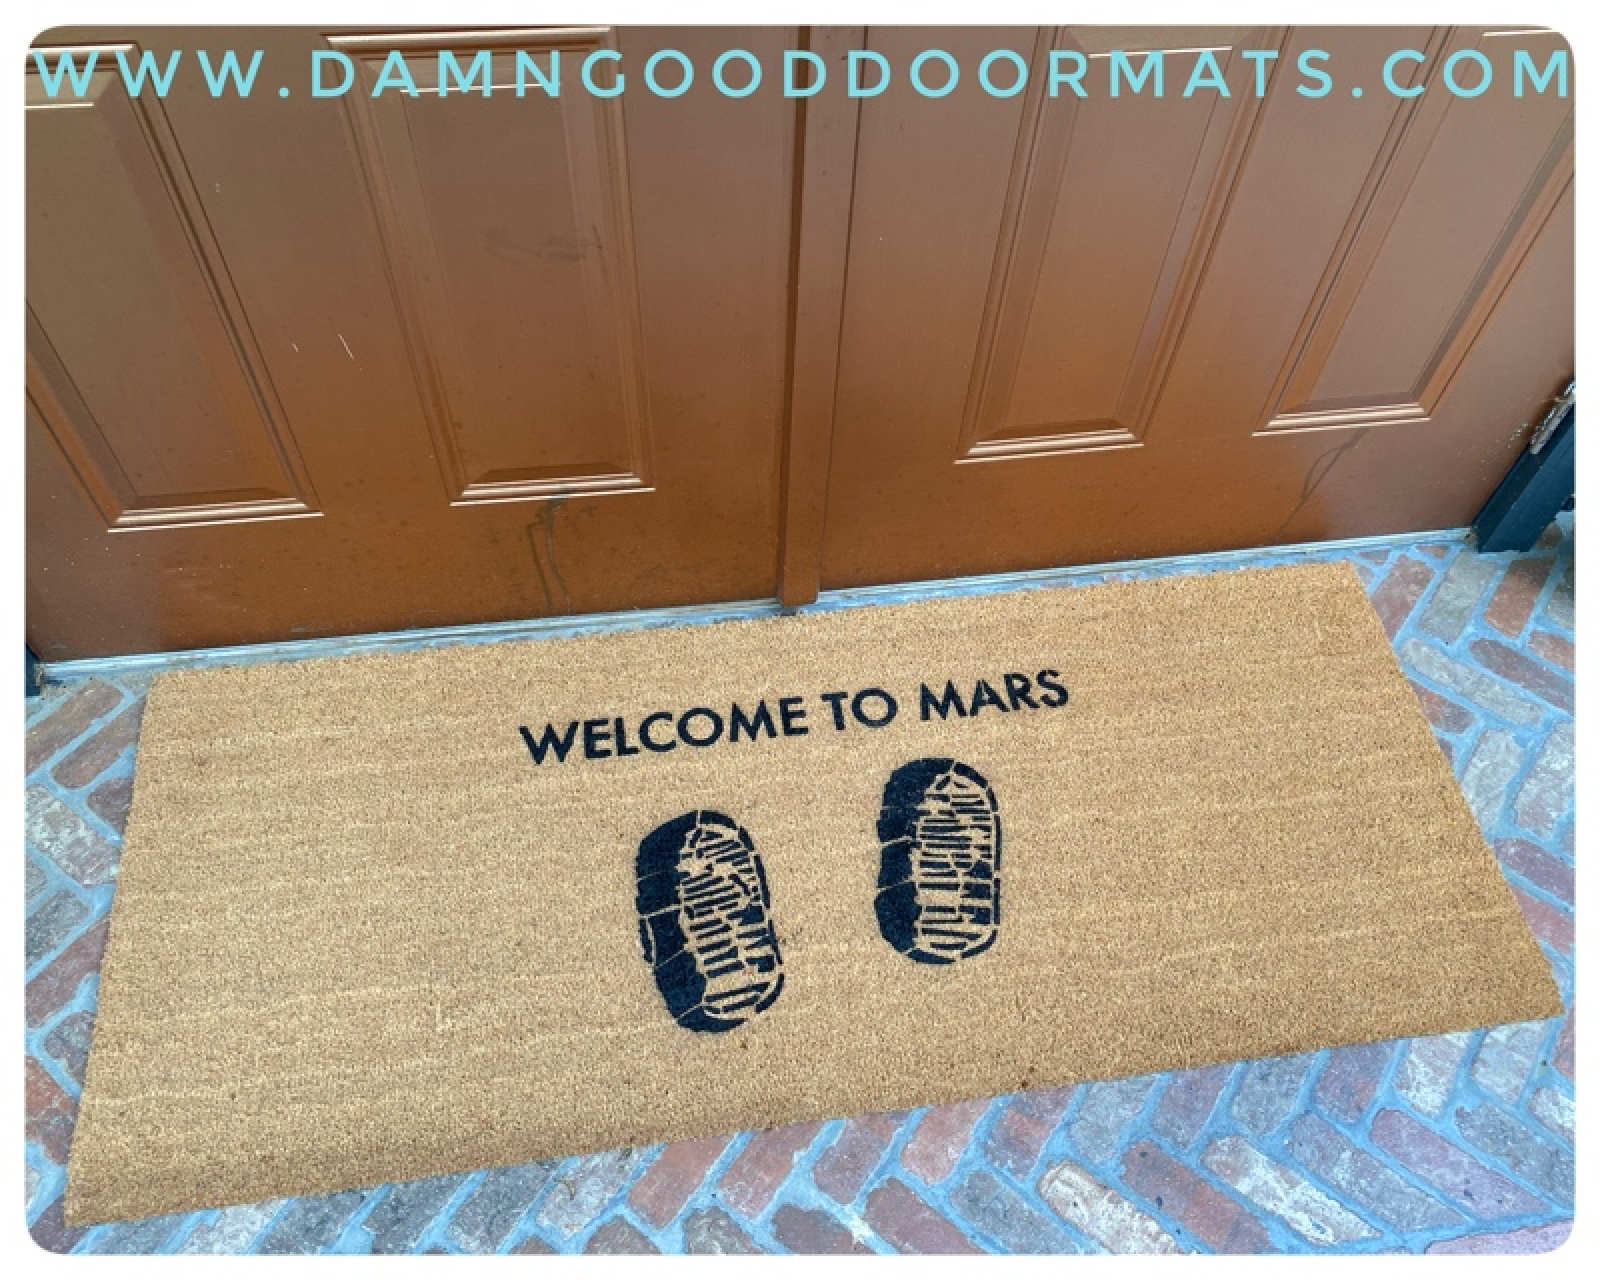 Welcome Hype Doormat Hypebeast Decor Welcome Mat Funny Doormat